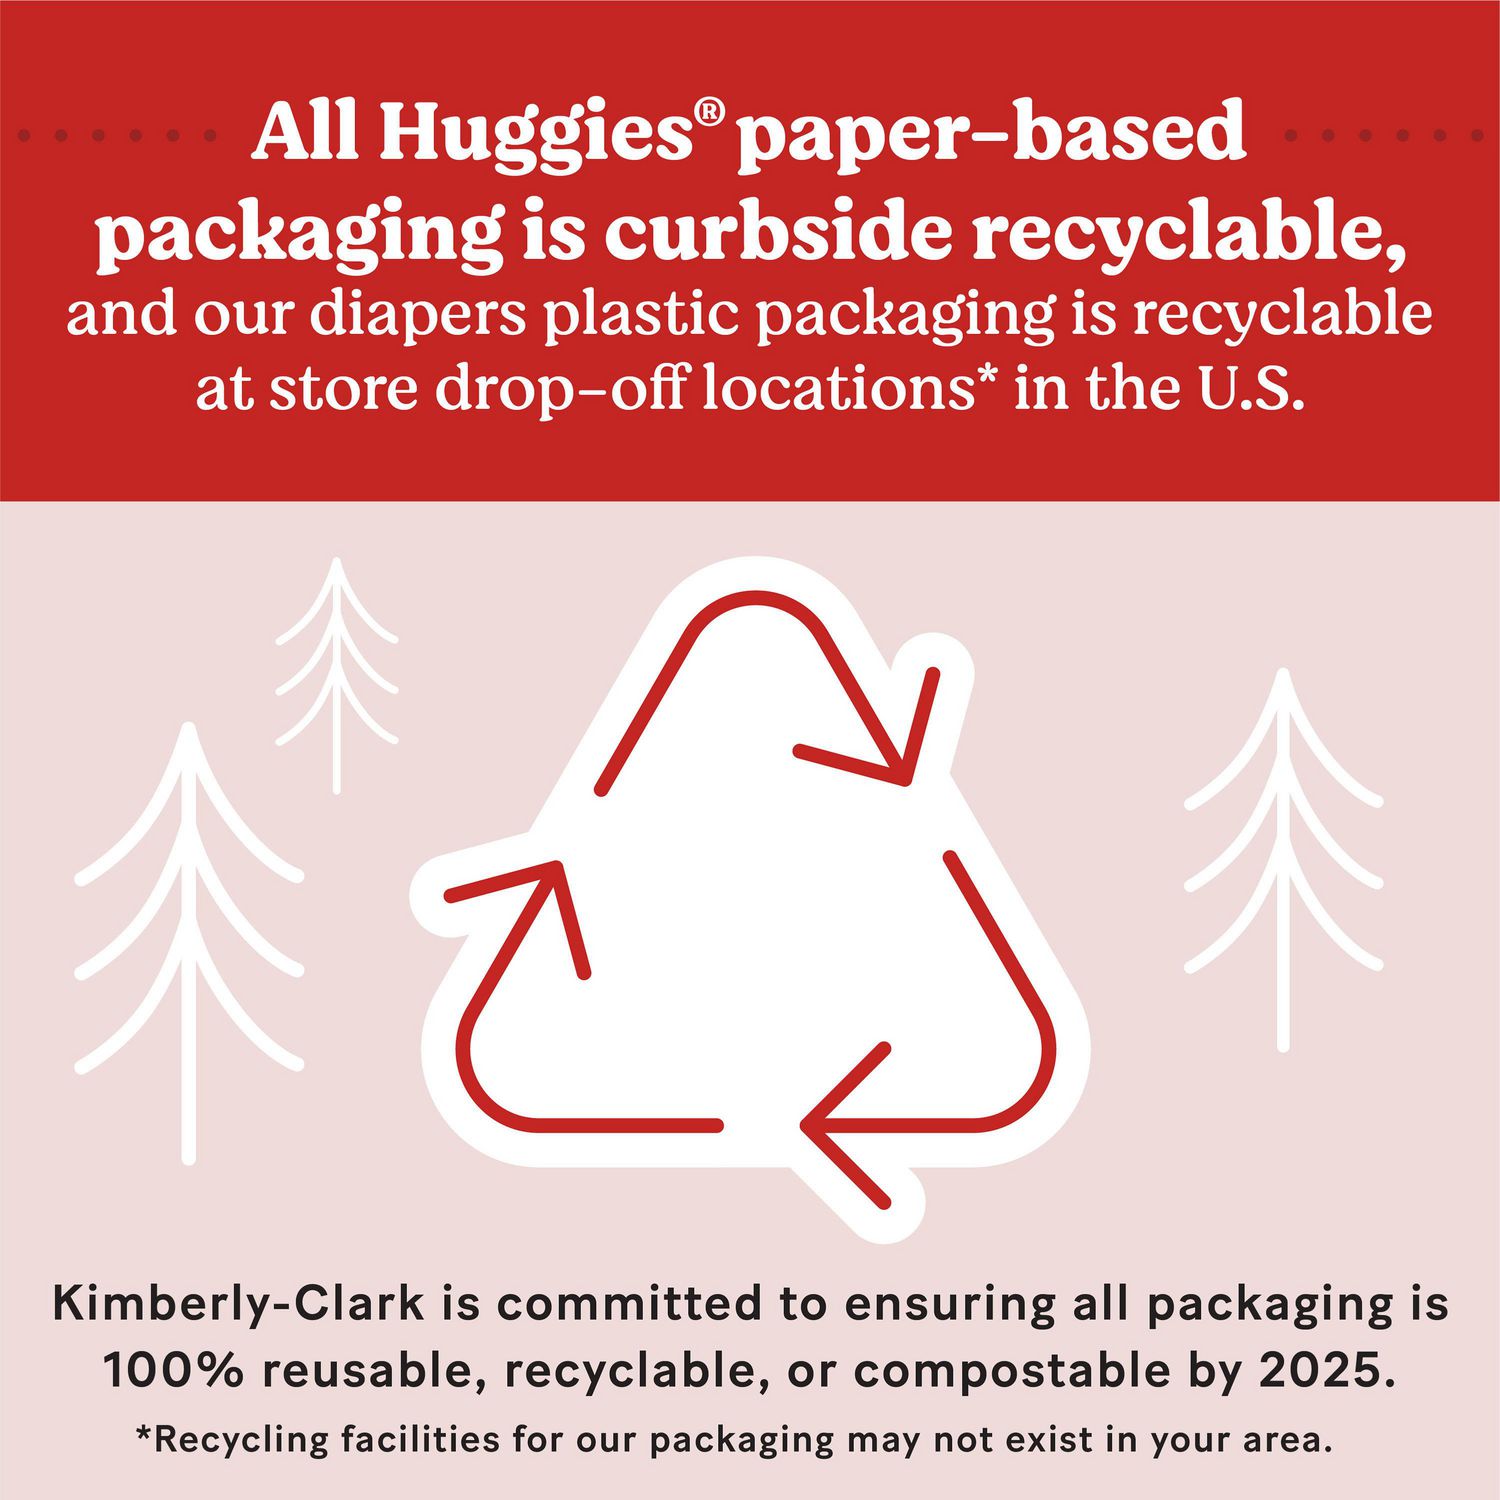 CA460 Lingettes Bebe Pure Biodegradable Huggies : Hygiène et santé